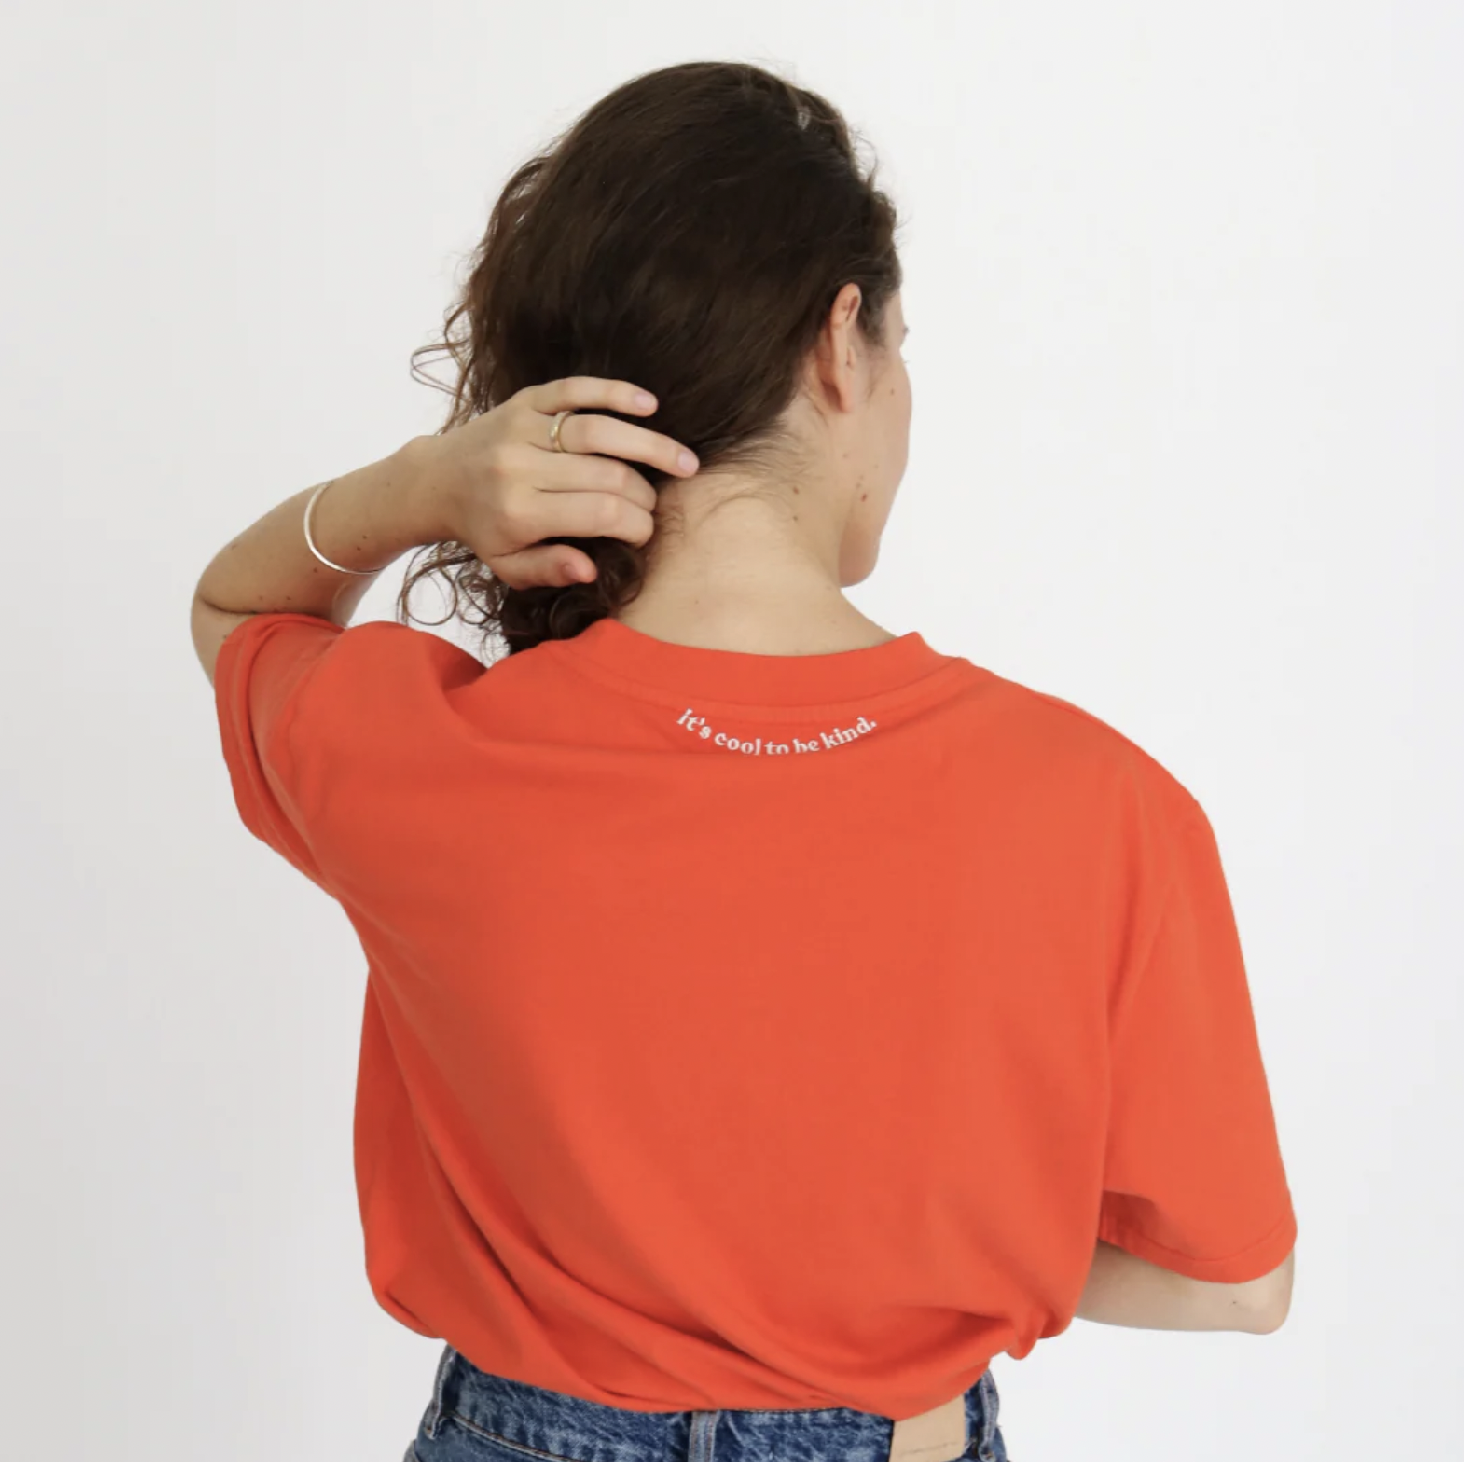 Popeia tričko s krátkým rukávem Kindness z bio-bavlny červené S/M